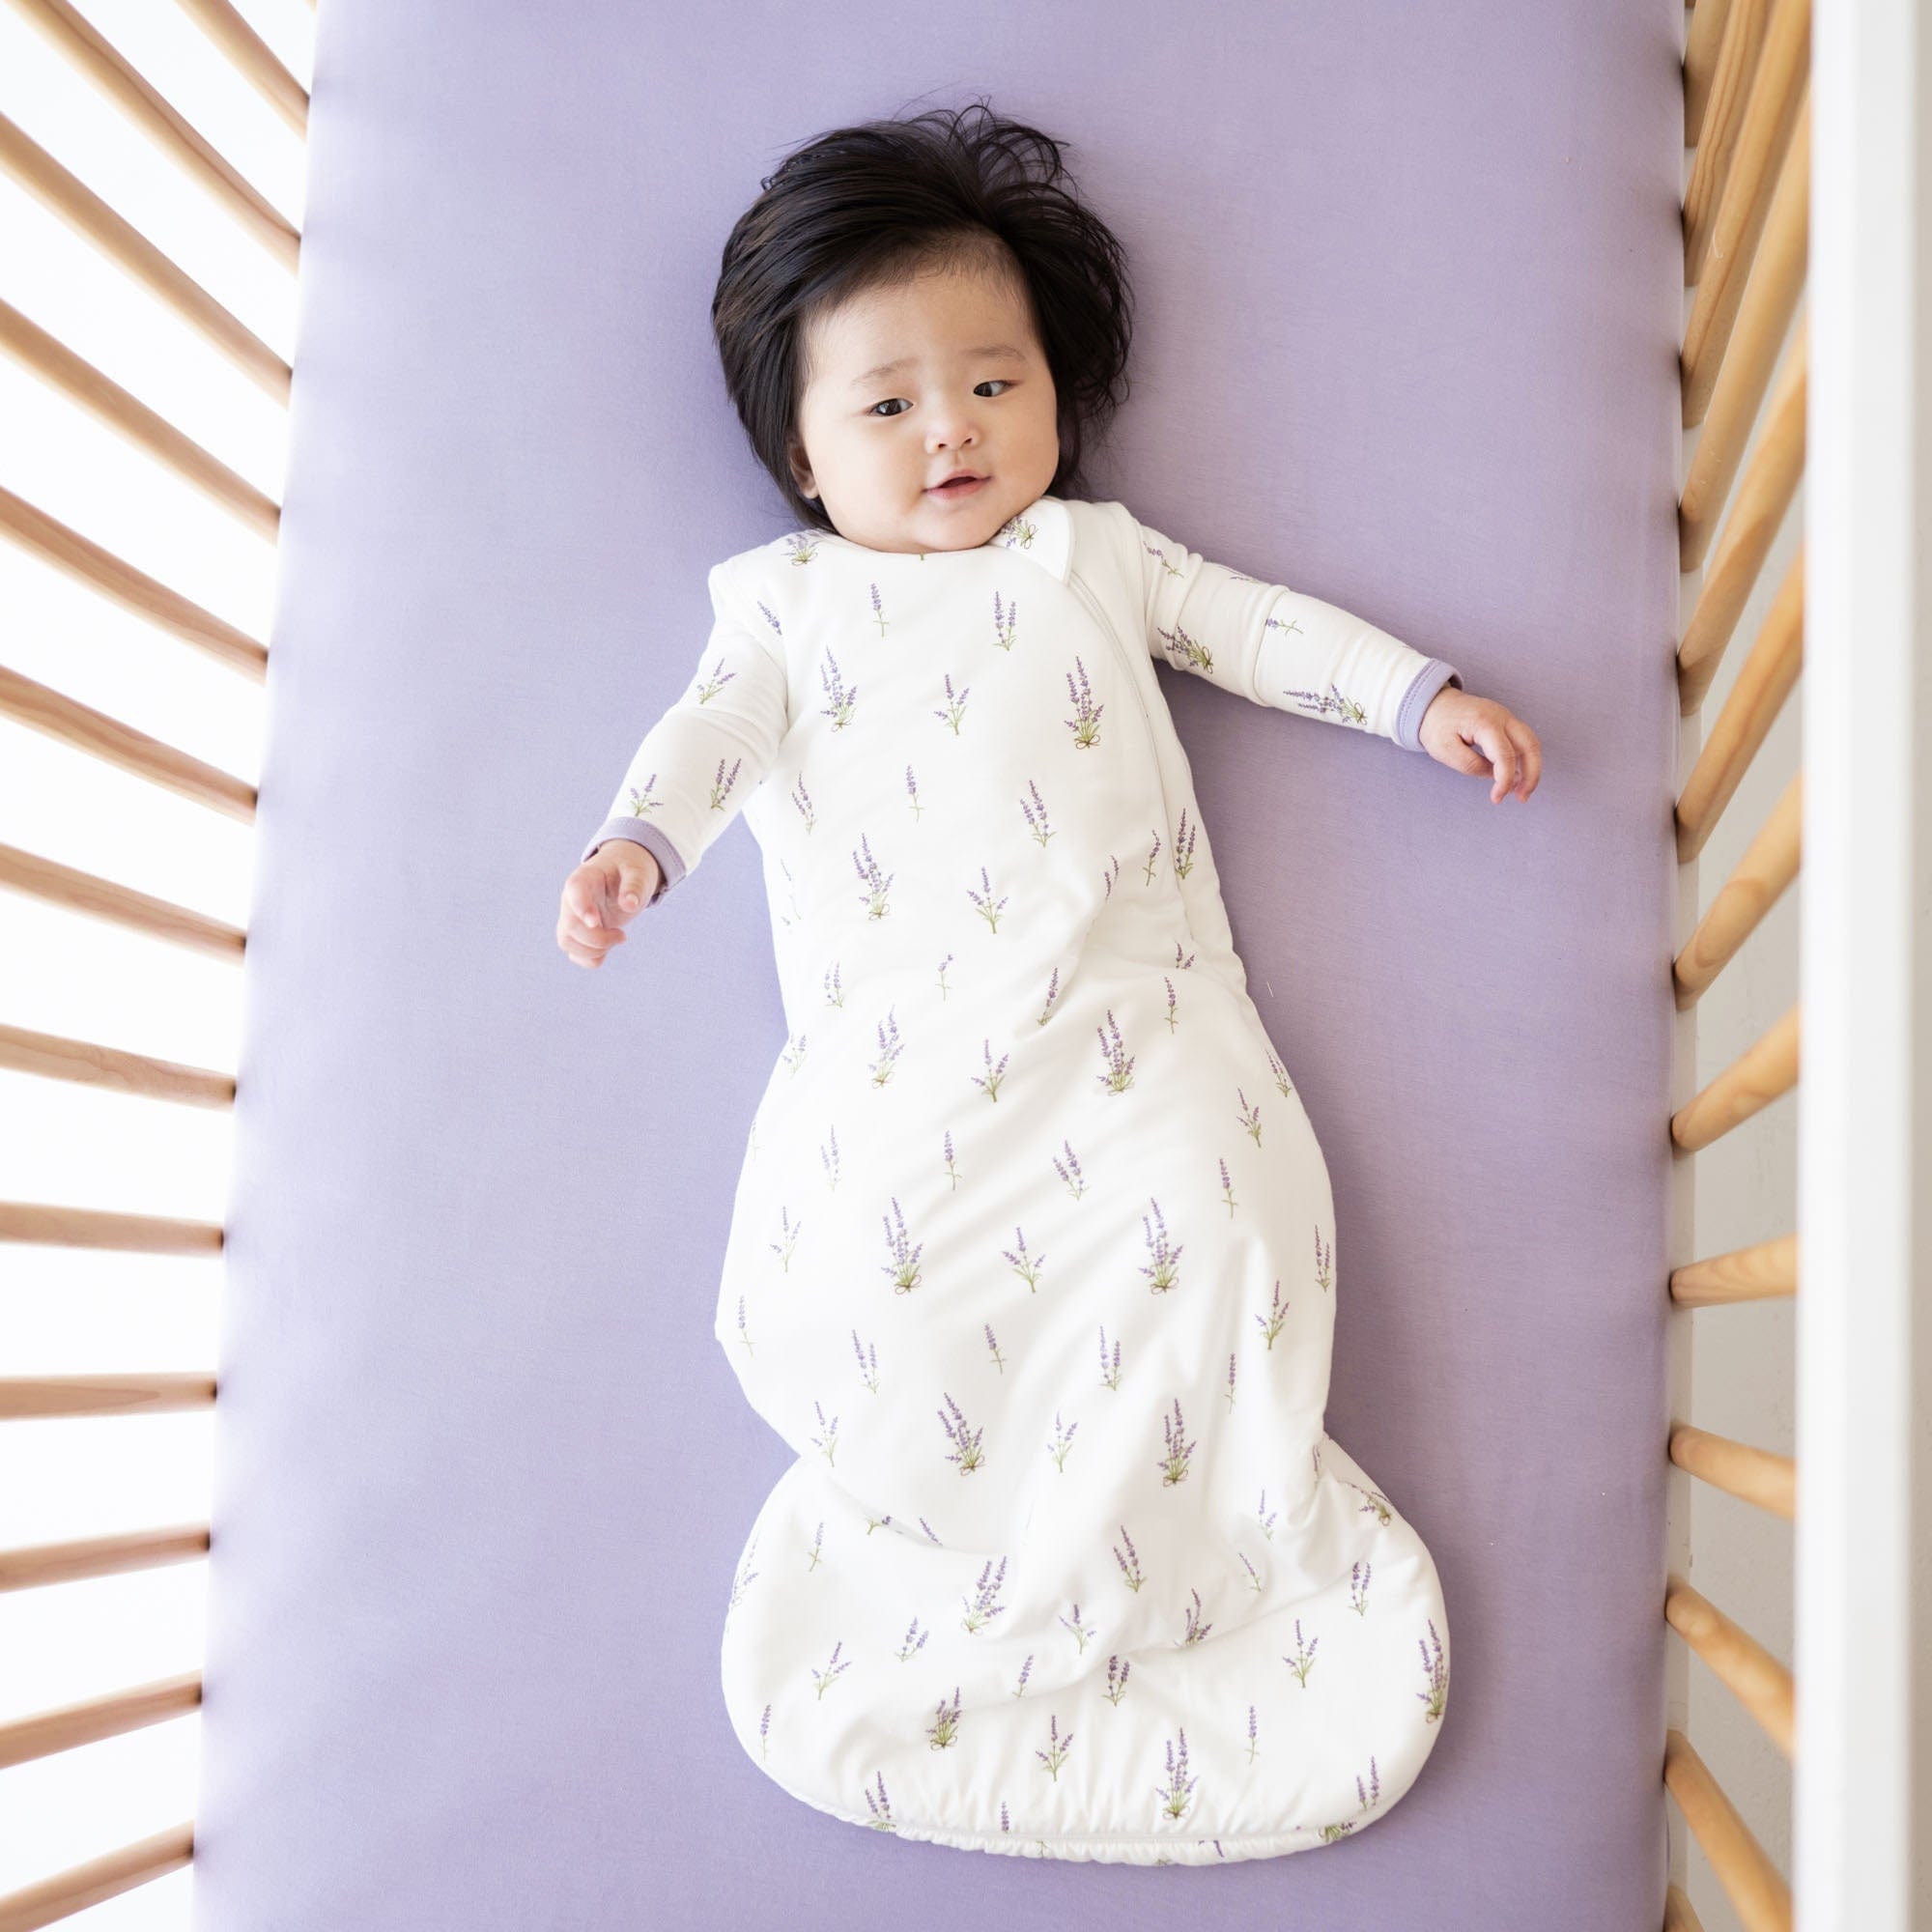 Infant wearing Kyte Baby Sleep Bag in Lavender 1.0